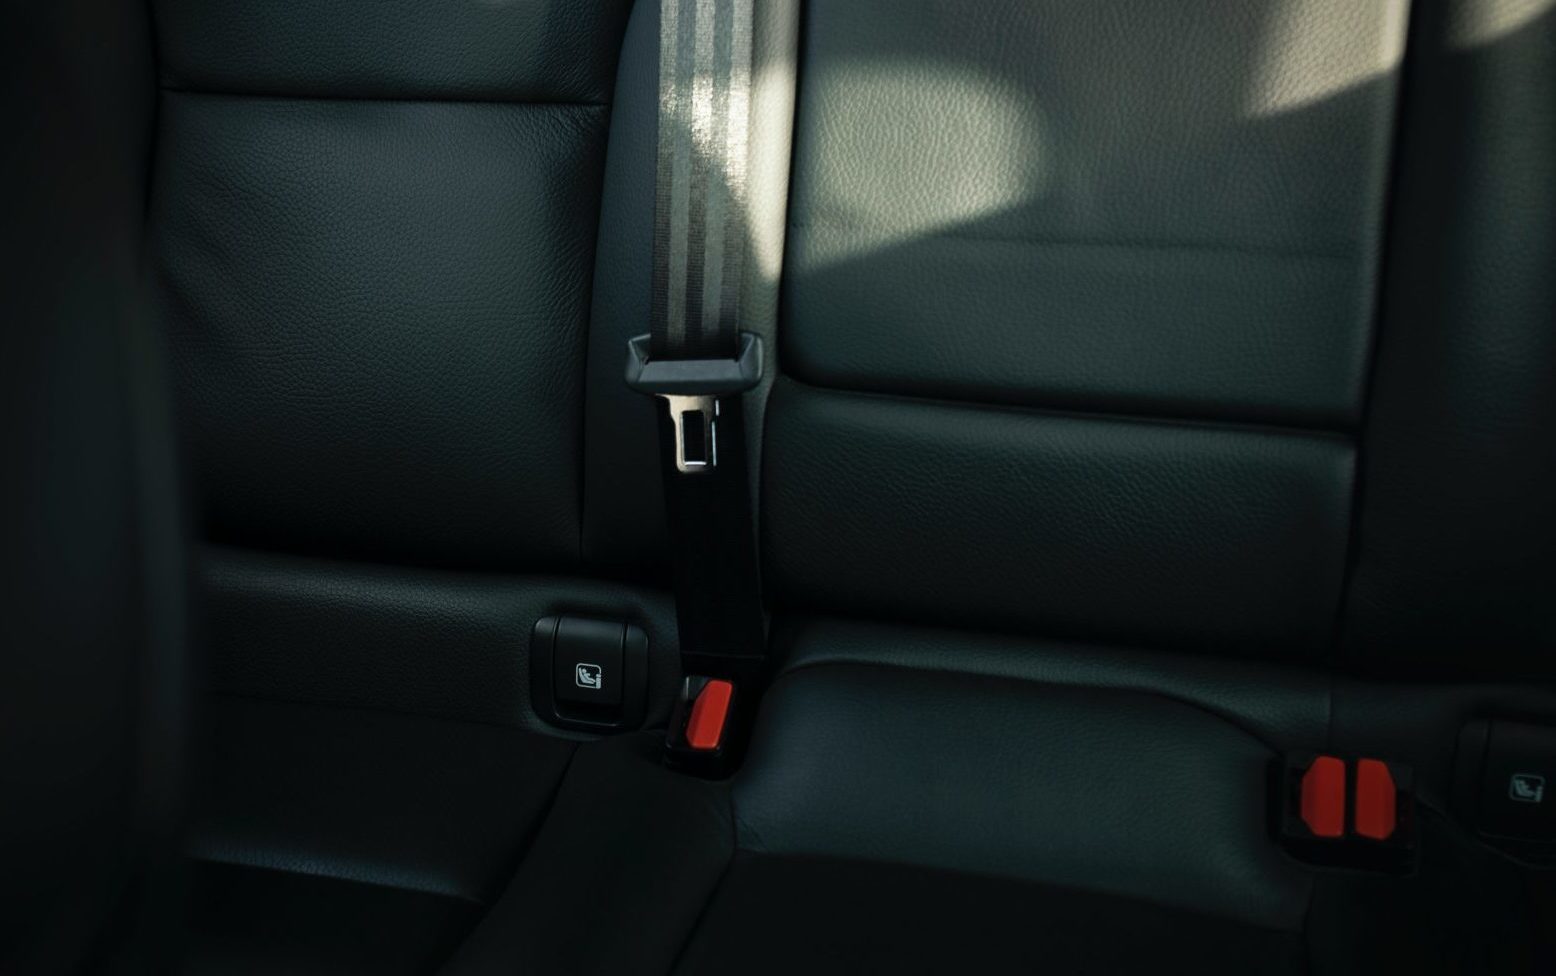 Car interior - seat belt